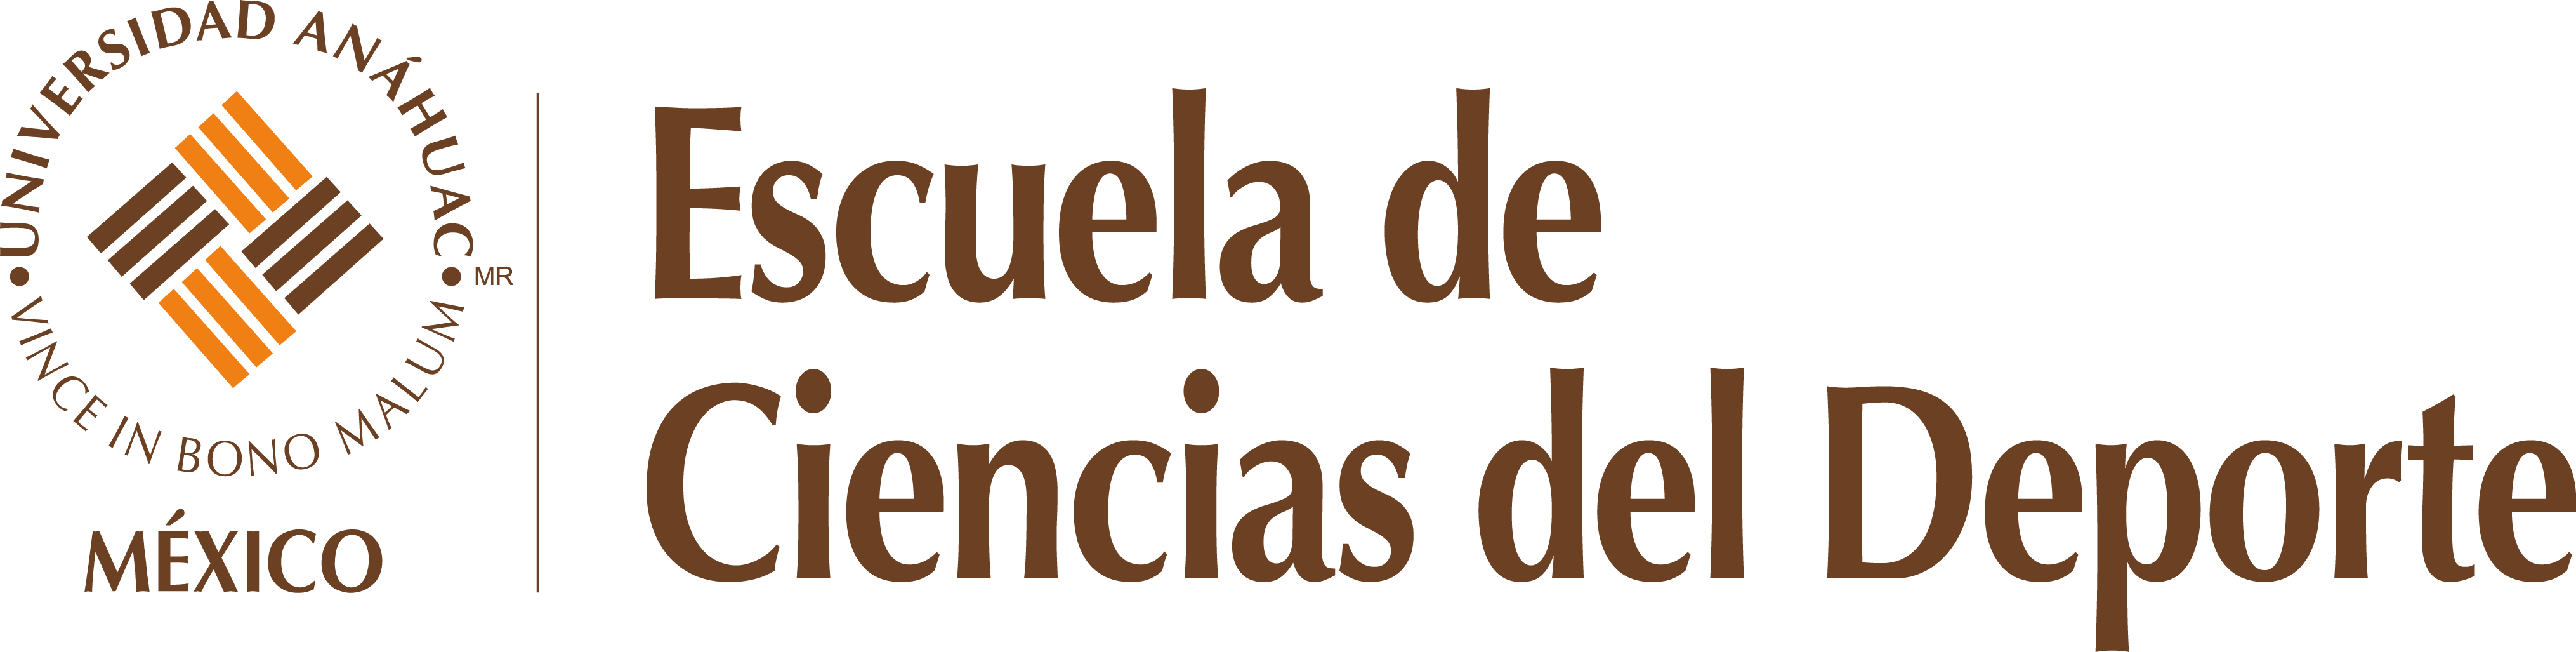 Logo Escuela de Ciencias del Deporte responsivo